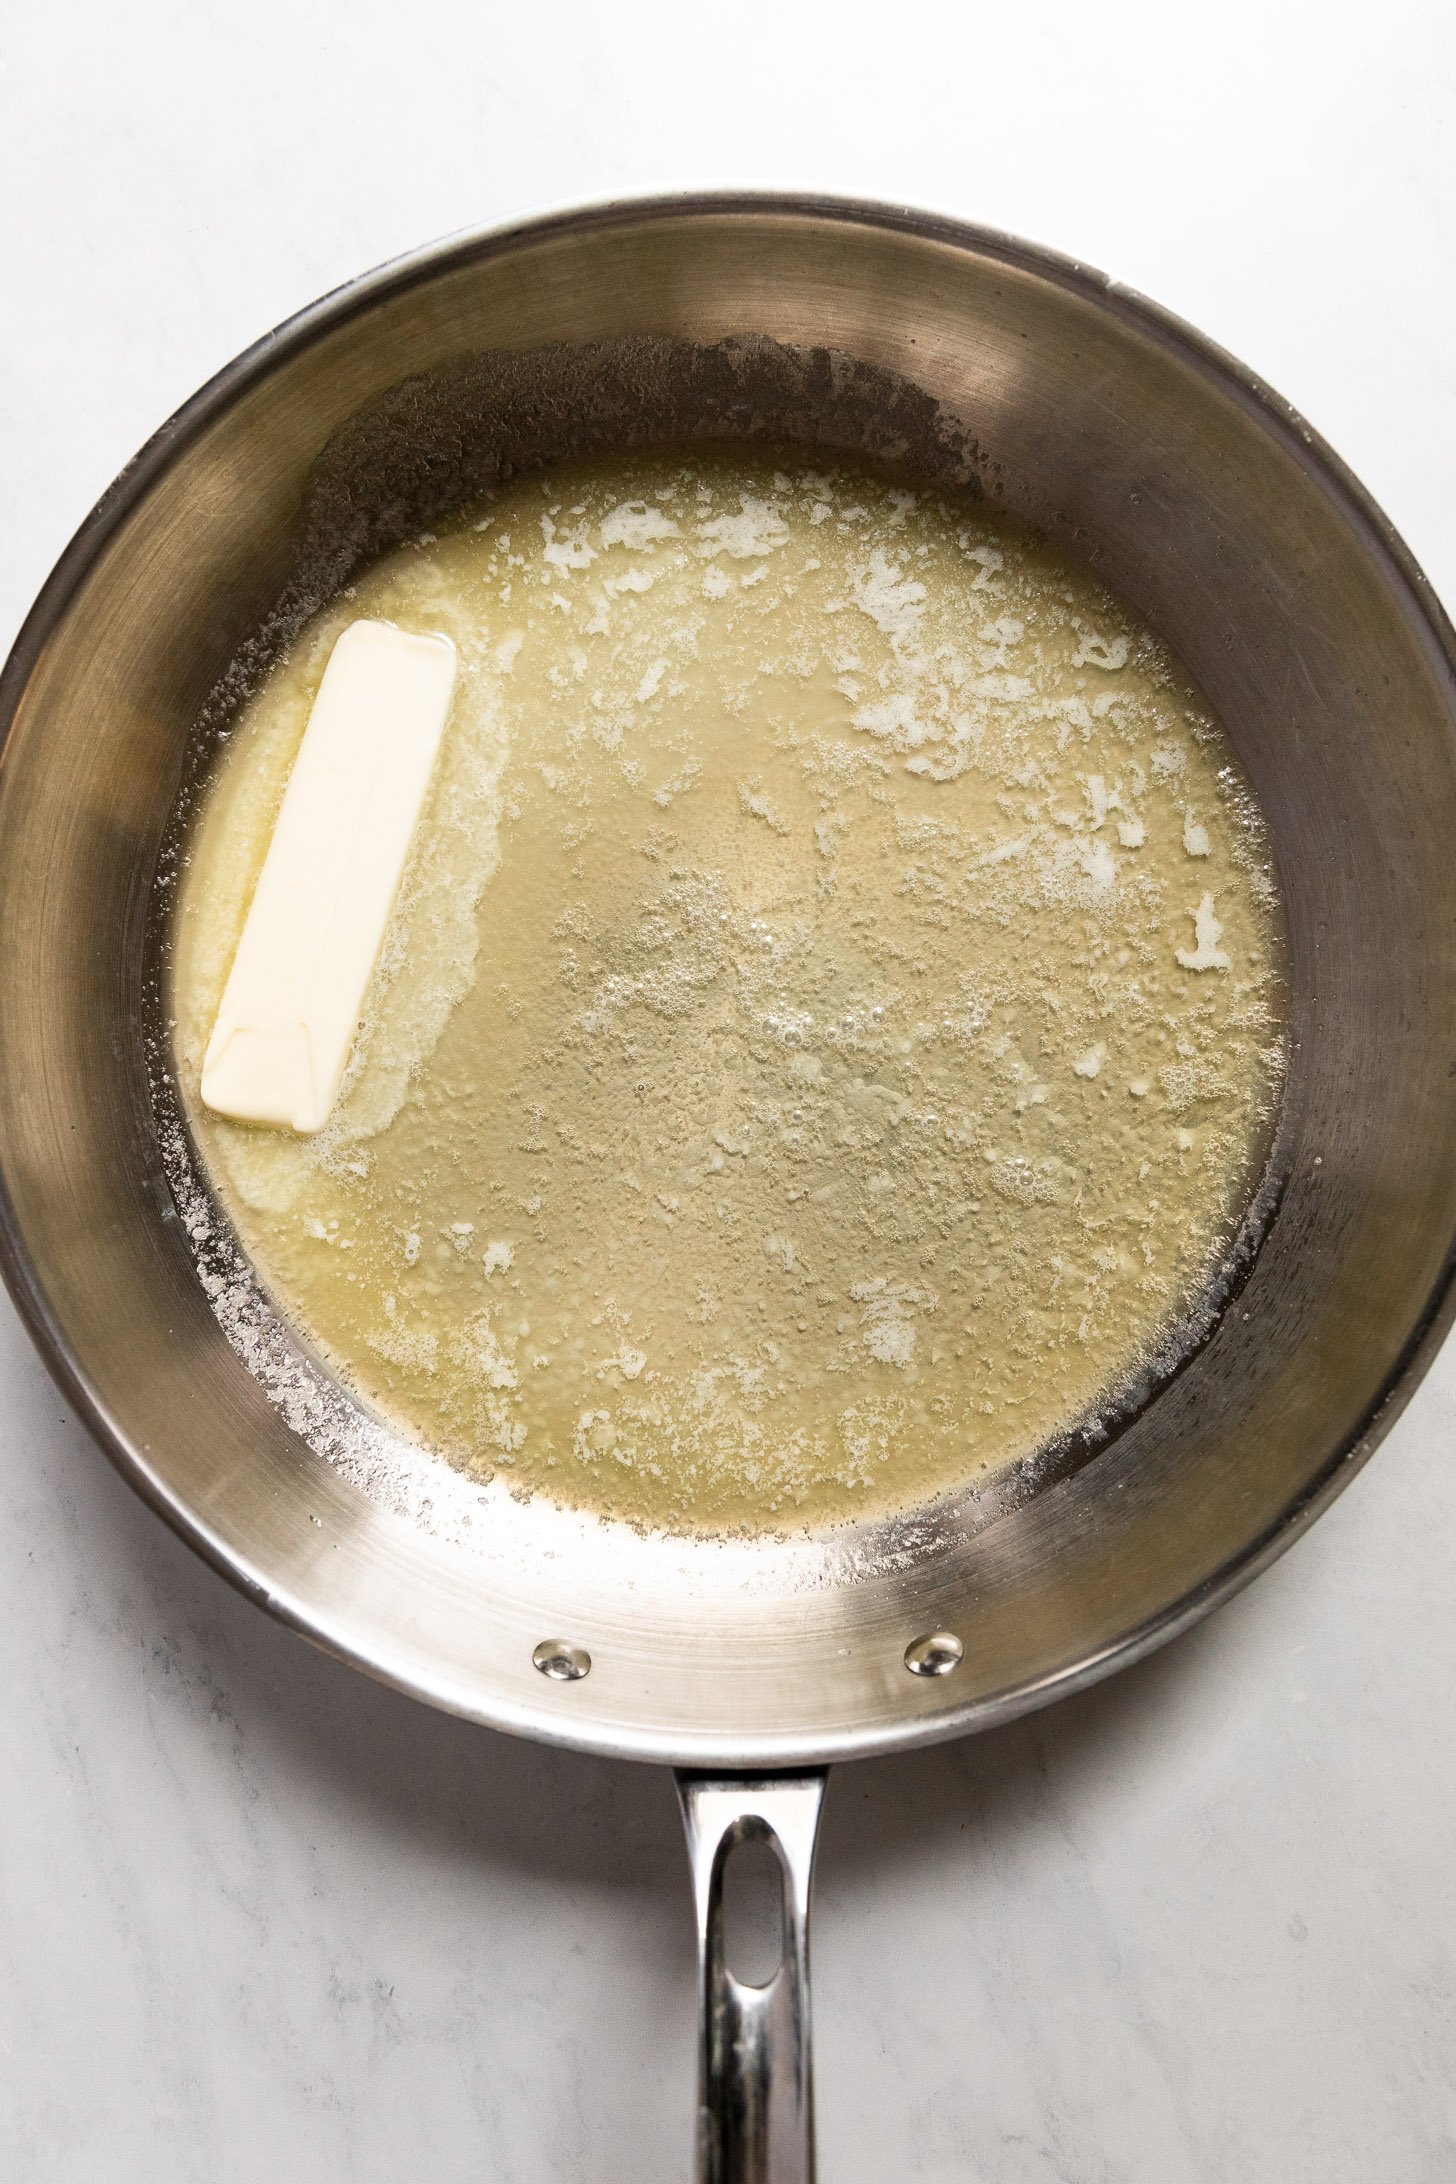 Butter melting in skillet.